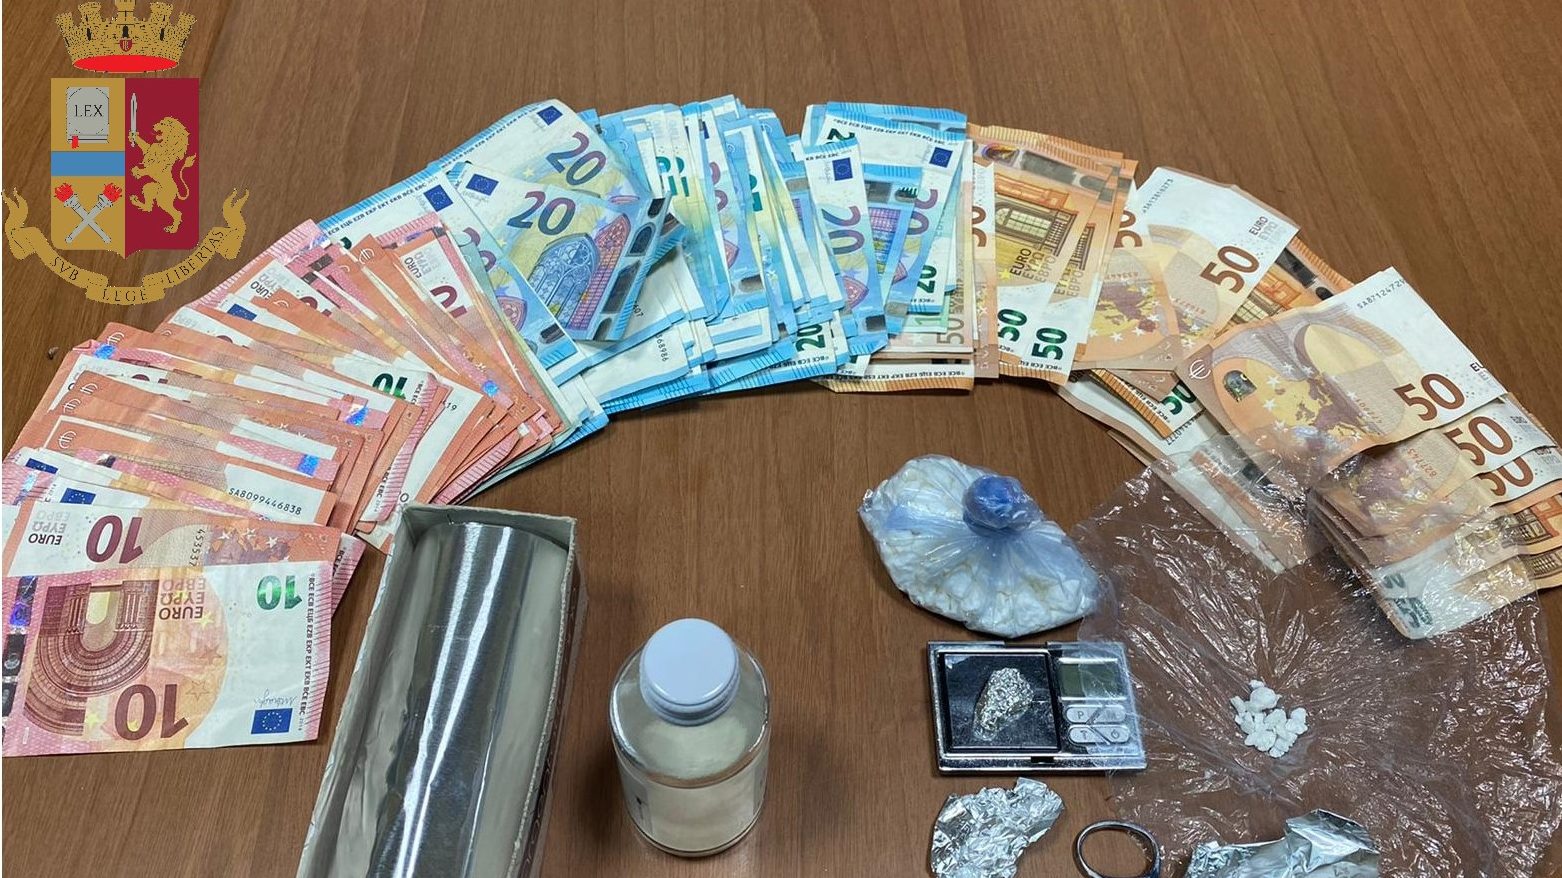 soldi sequestrati dopo un arresto per detenzione ai fini di spaccio di droga a messina